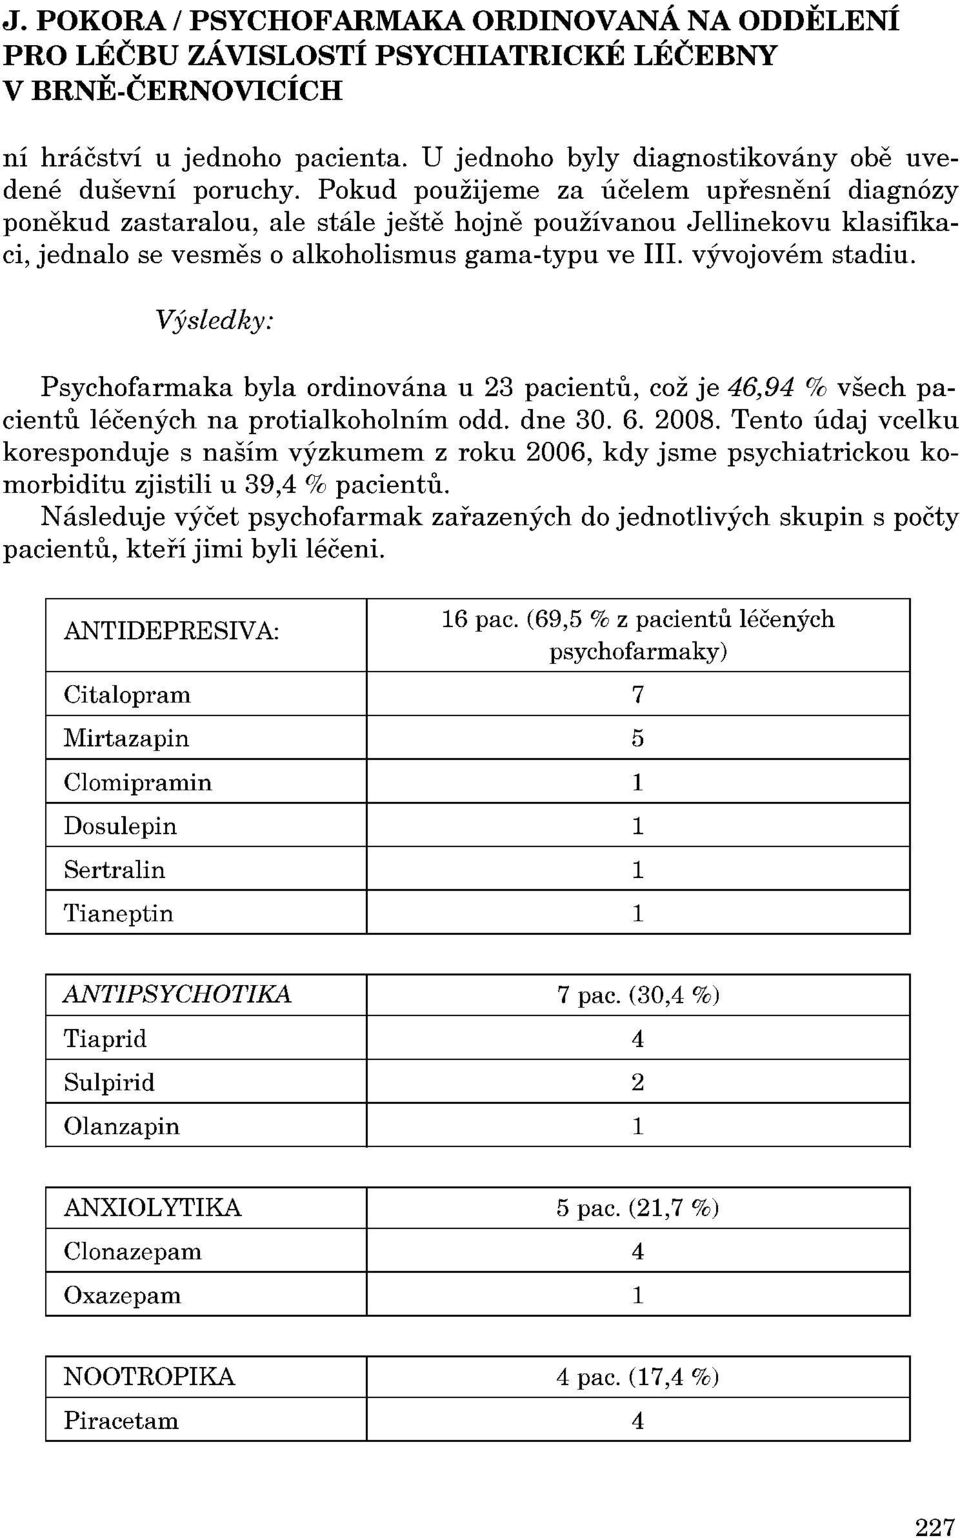 Výsledky: Psychofarmaka byla ordinována u 23 pacientu, což je 46,94 % všech pacientu léčených na protialkoholním odd. dne 30. 6. 2008.